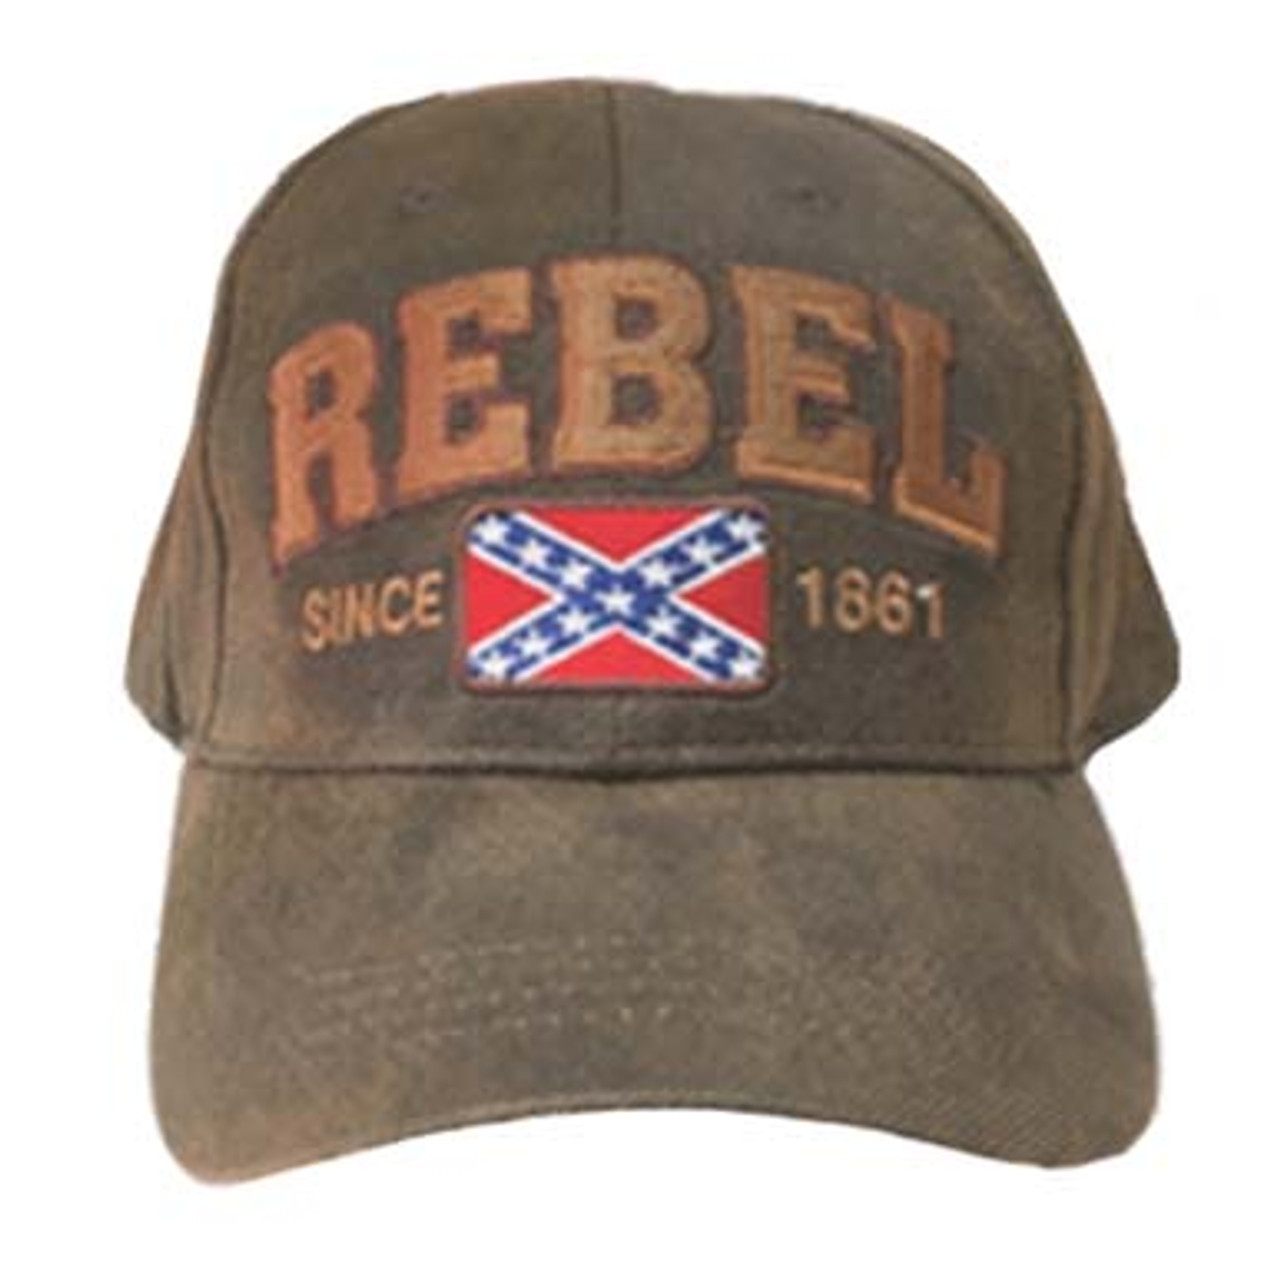 Rebel Confederate Flag Vintage Hat